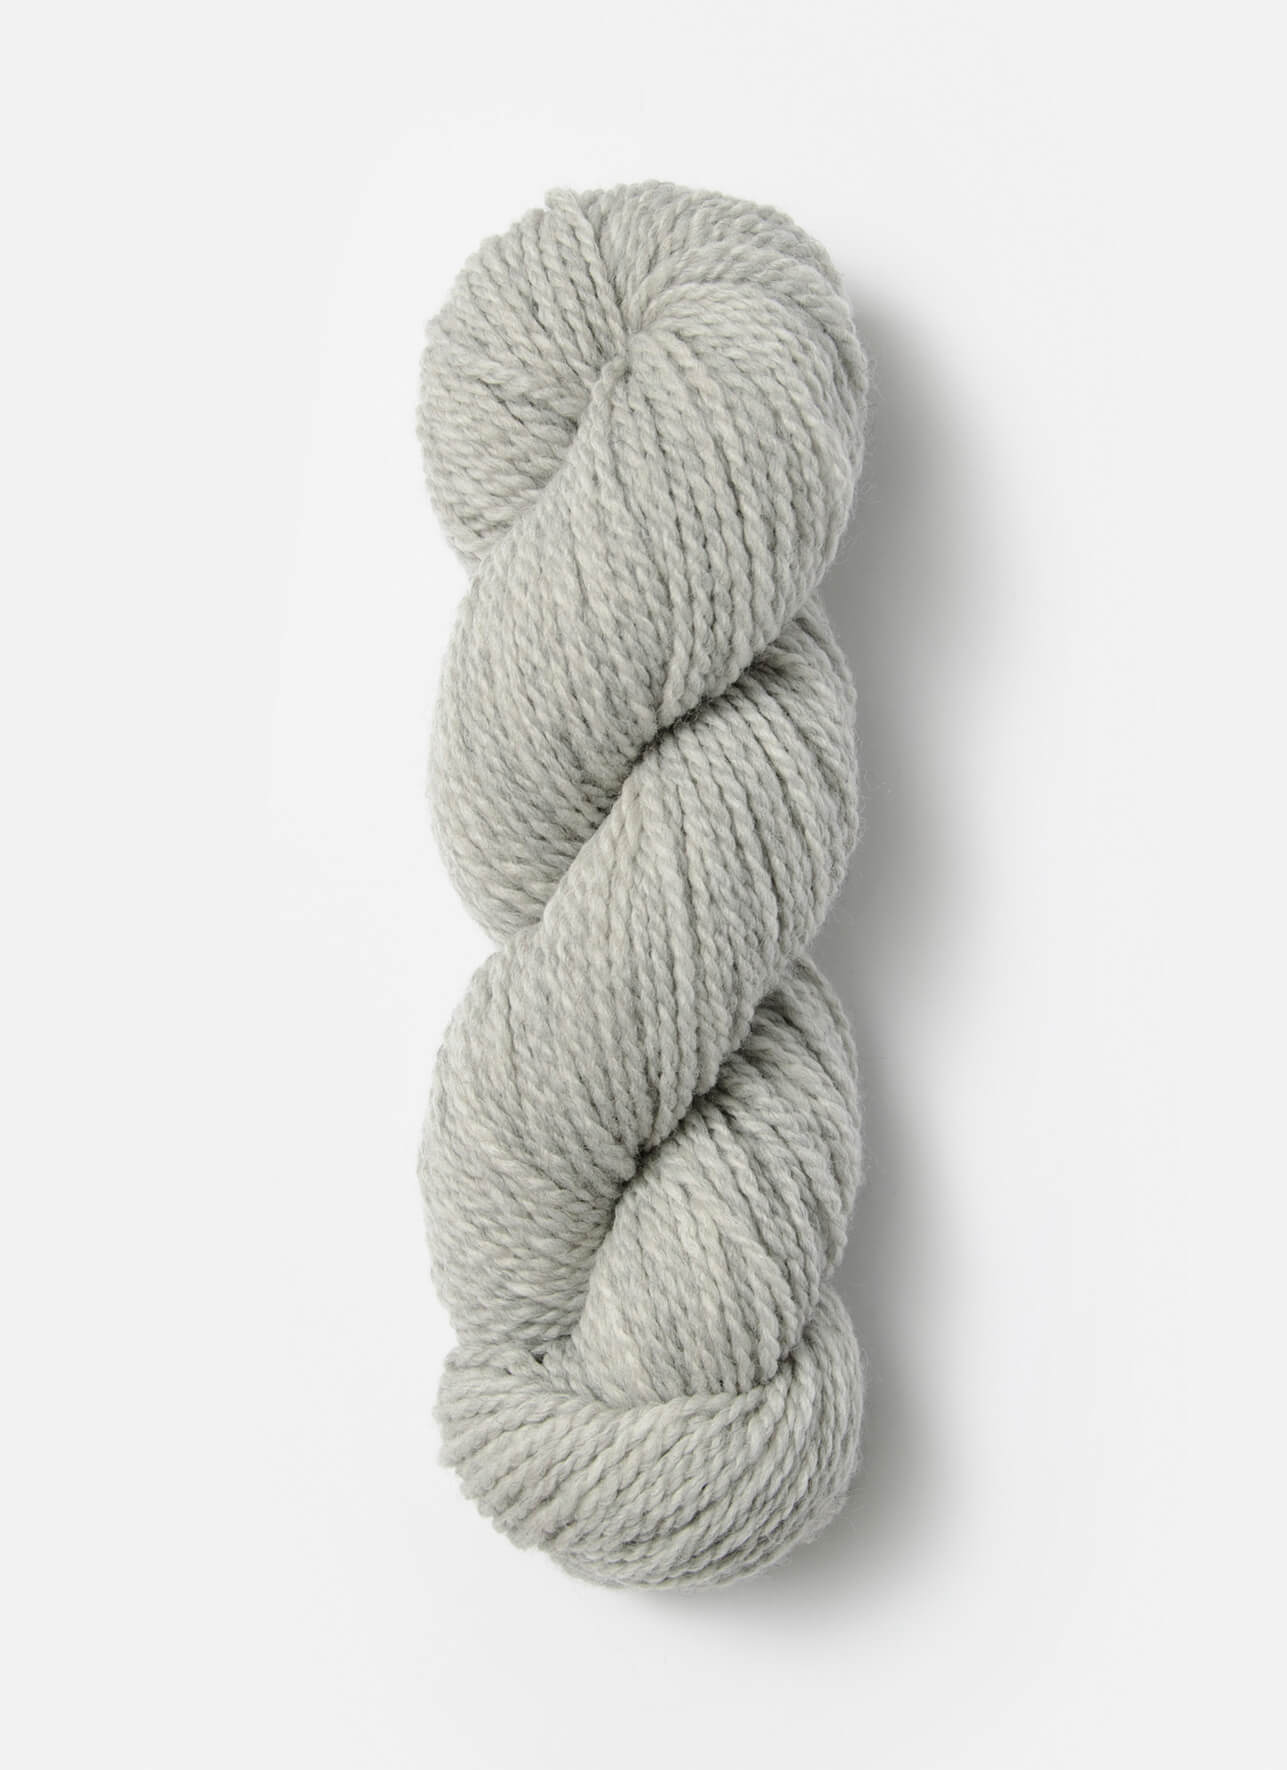 Blue Sky Fibers Woolstok 150 gram wool yarn color 1304